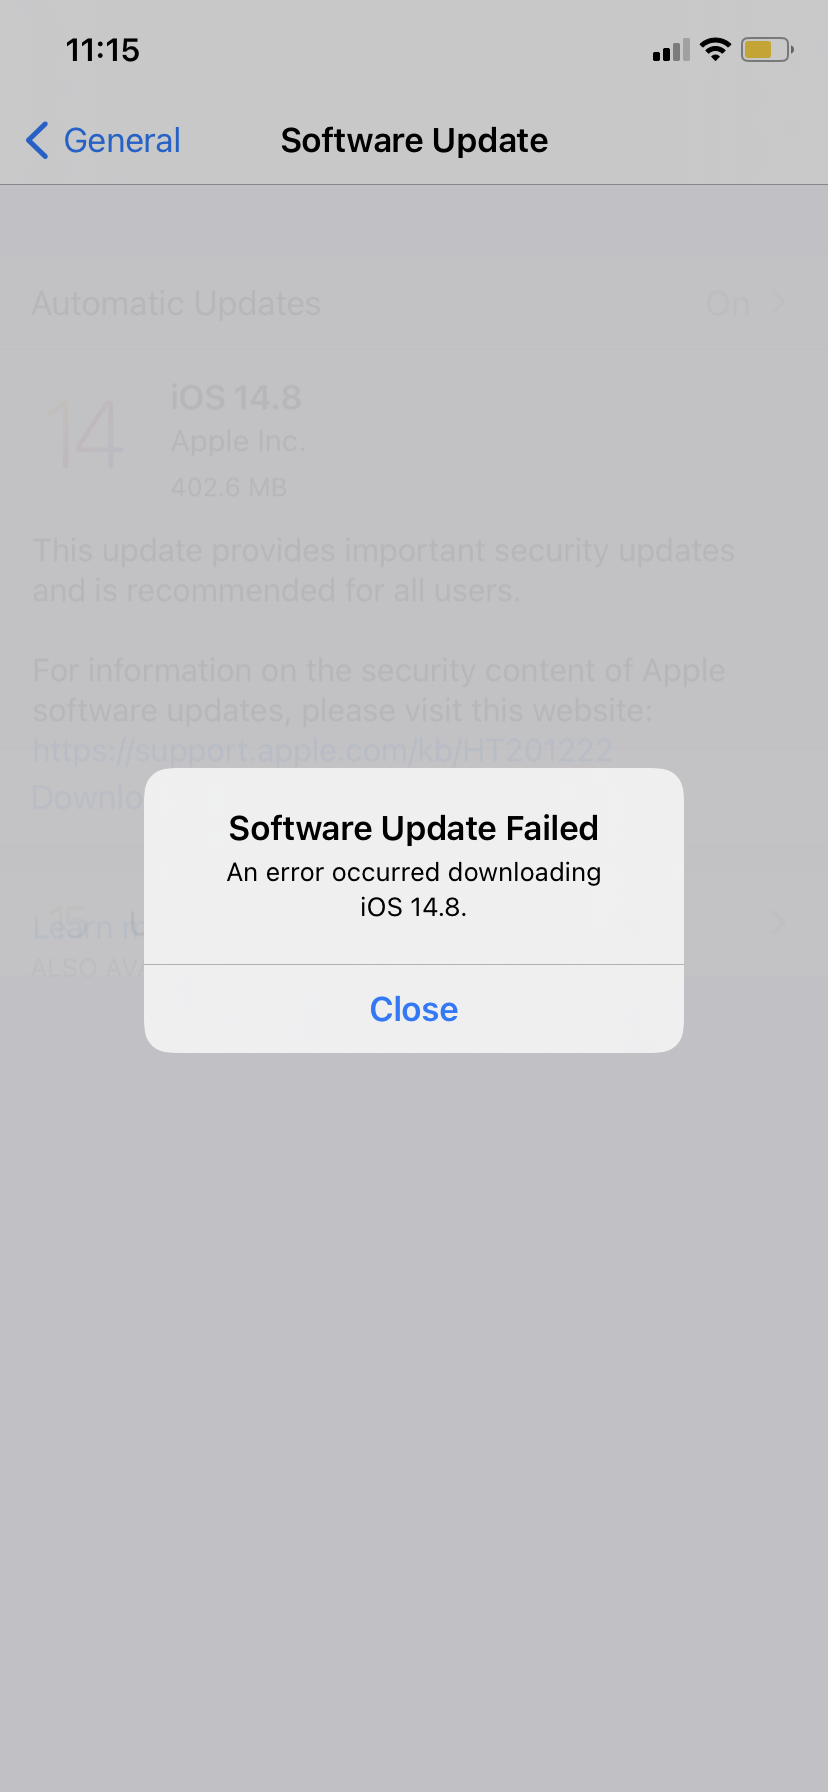 Firmware update fails : Support